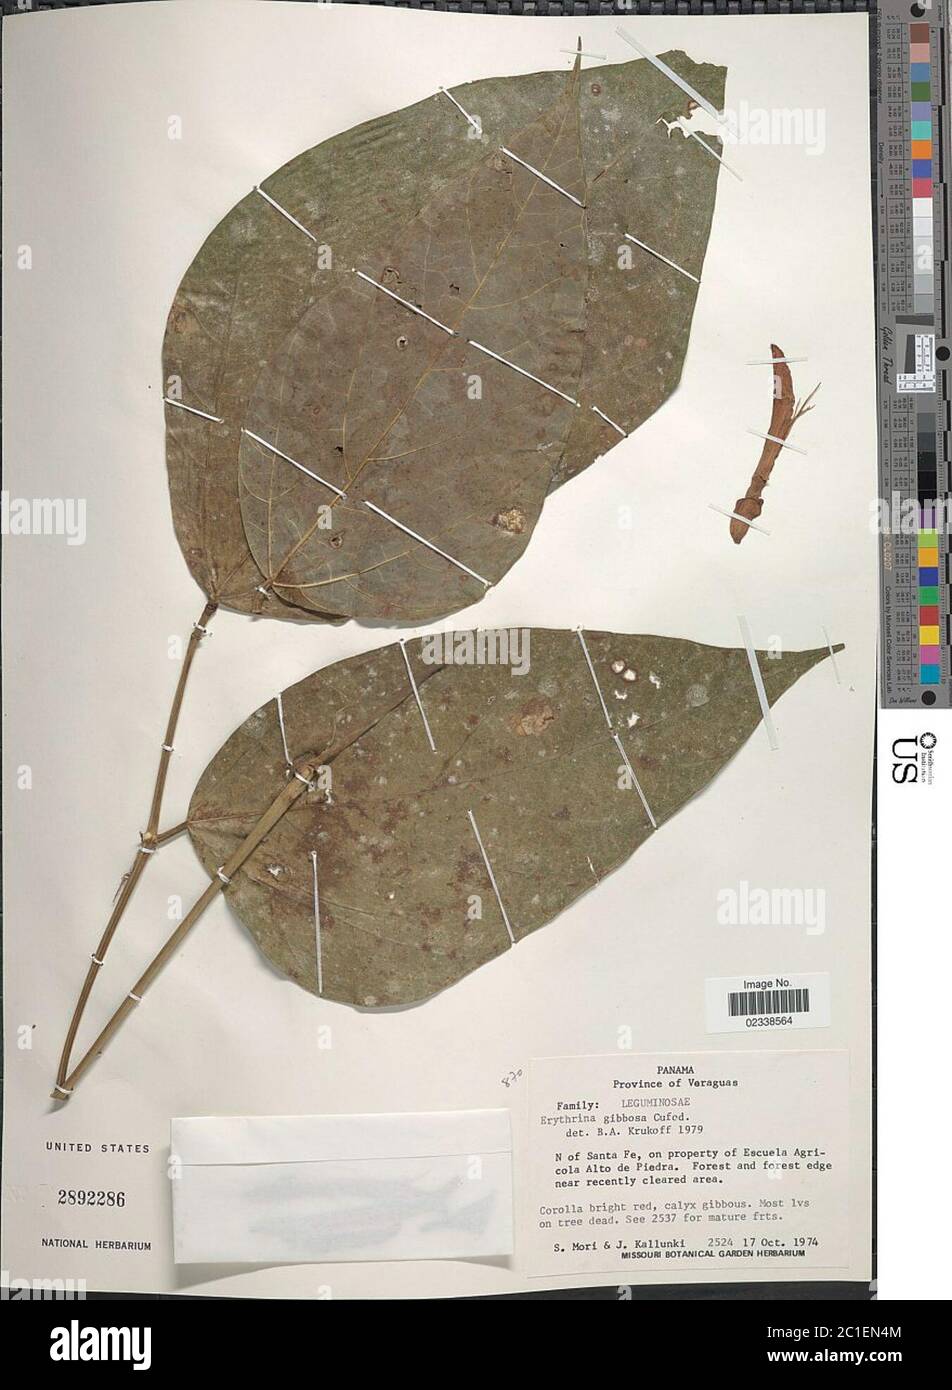 Erythrina gibbosa Cufod Erythrina gibbosa Cufod. Stock Photo